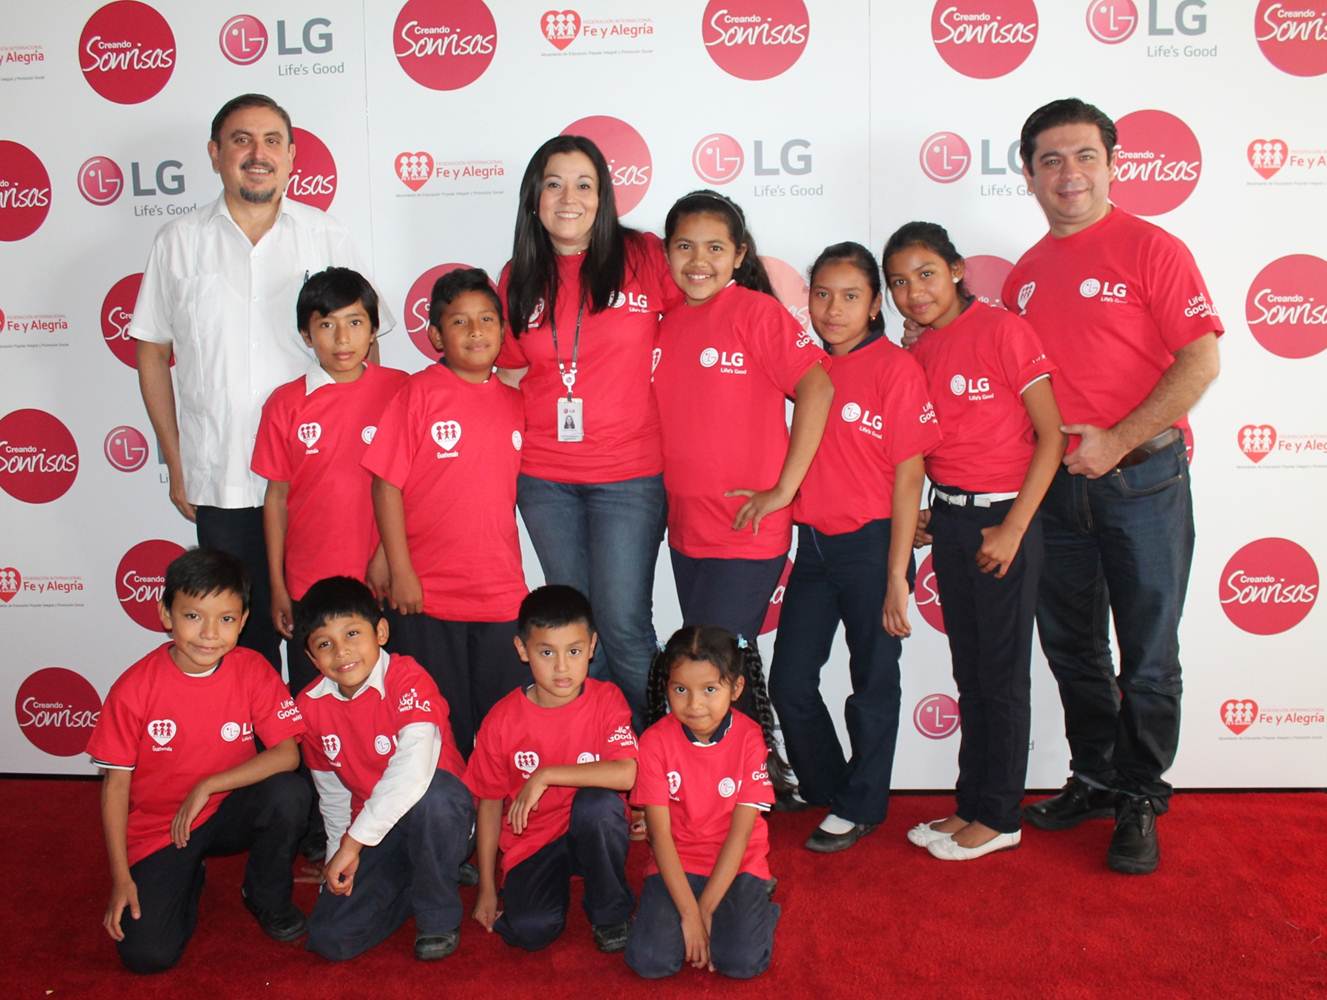 LG busca reunir 30.000 sonrisas en Guatemala